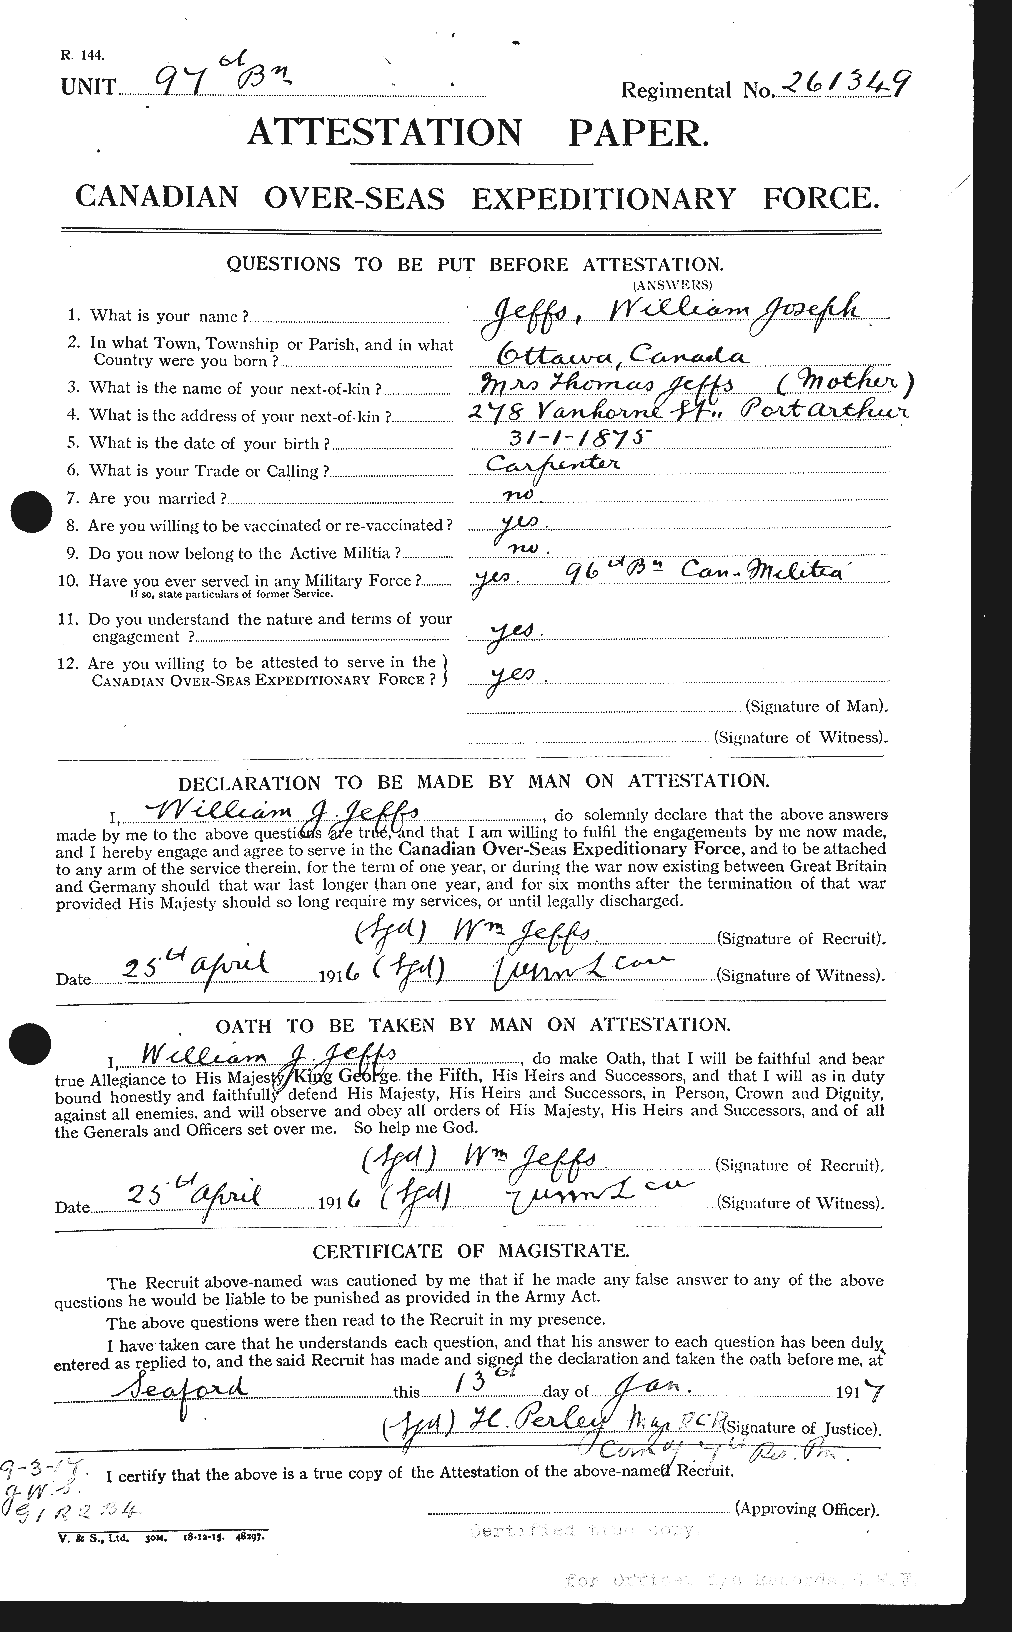 Dossiers du Personnel de la Première Guerre mondiale - CEC 419571a